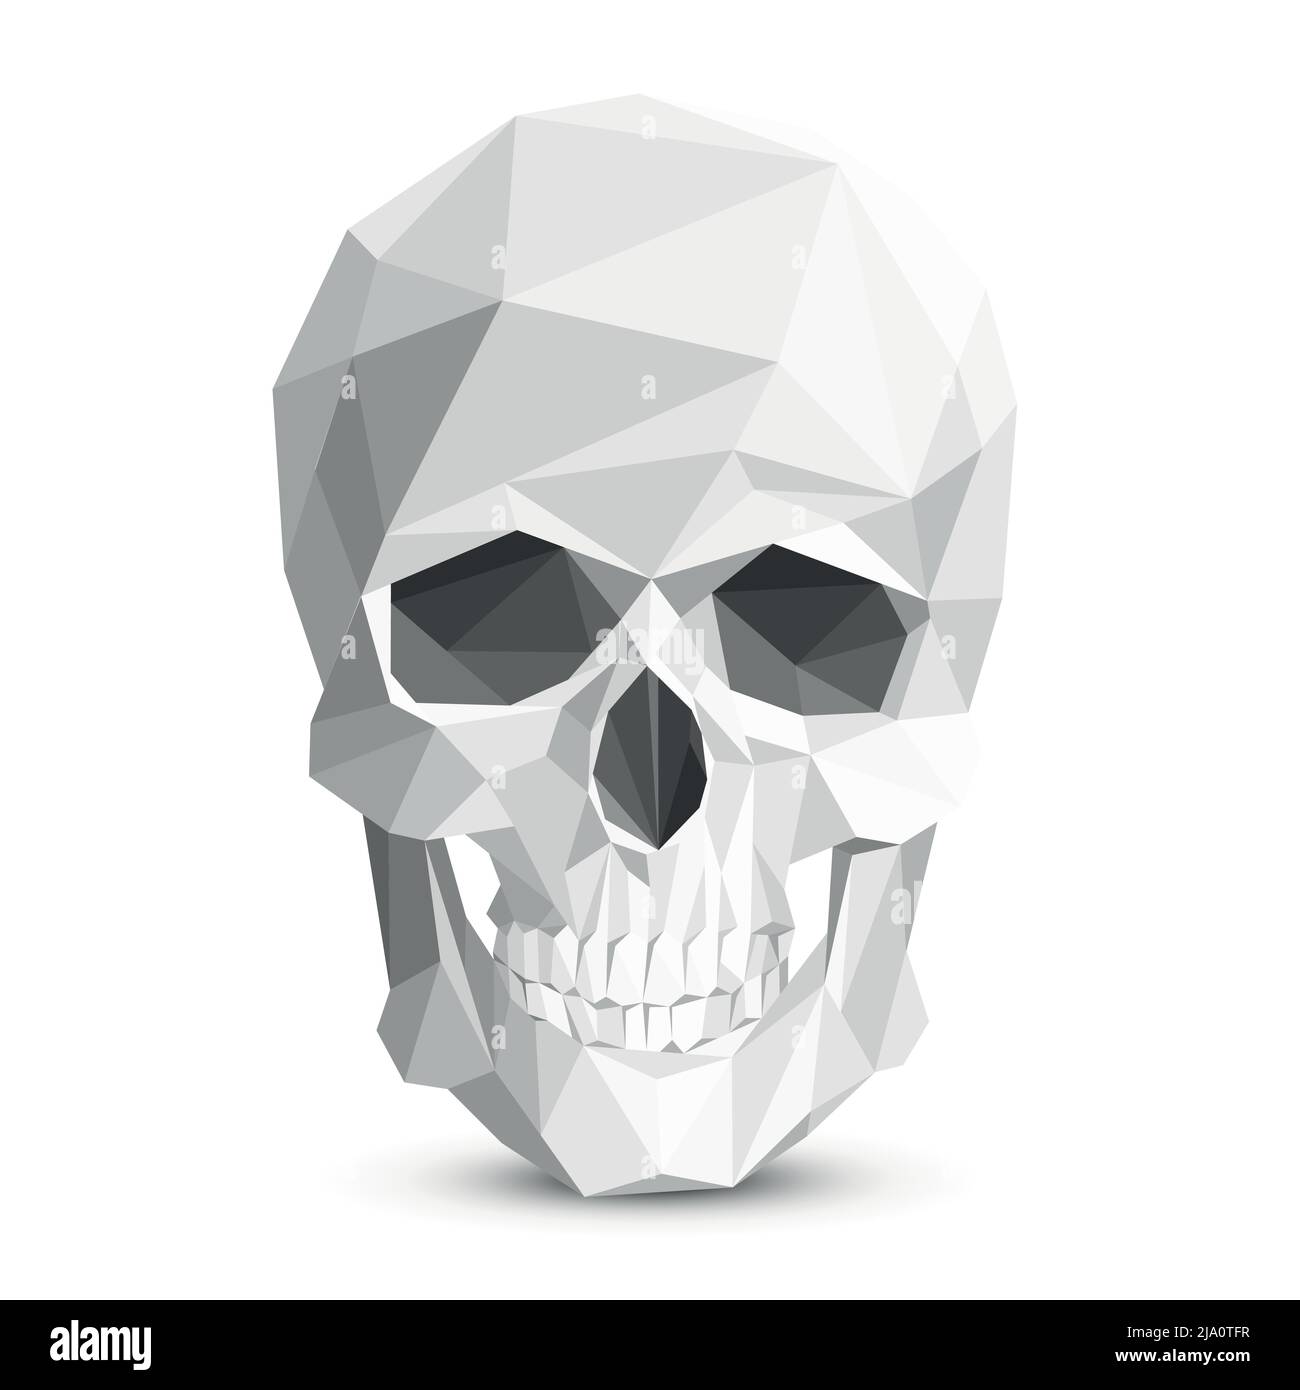 Farbenfroher geometrischer Totenkopf mit niedrigem Poly-Muster. Vektor dreieckiger Schädel. Abbildung: Schädel des menschlichen Kopfes, Skelett-Polygon-Schädel, Augenhöhle und Zahnschädel Stock Vektor